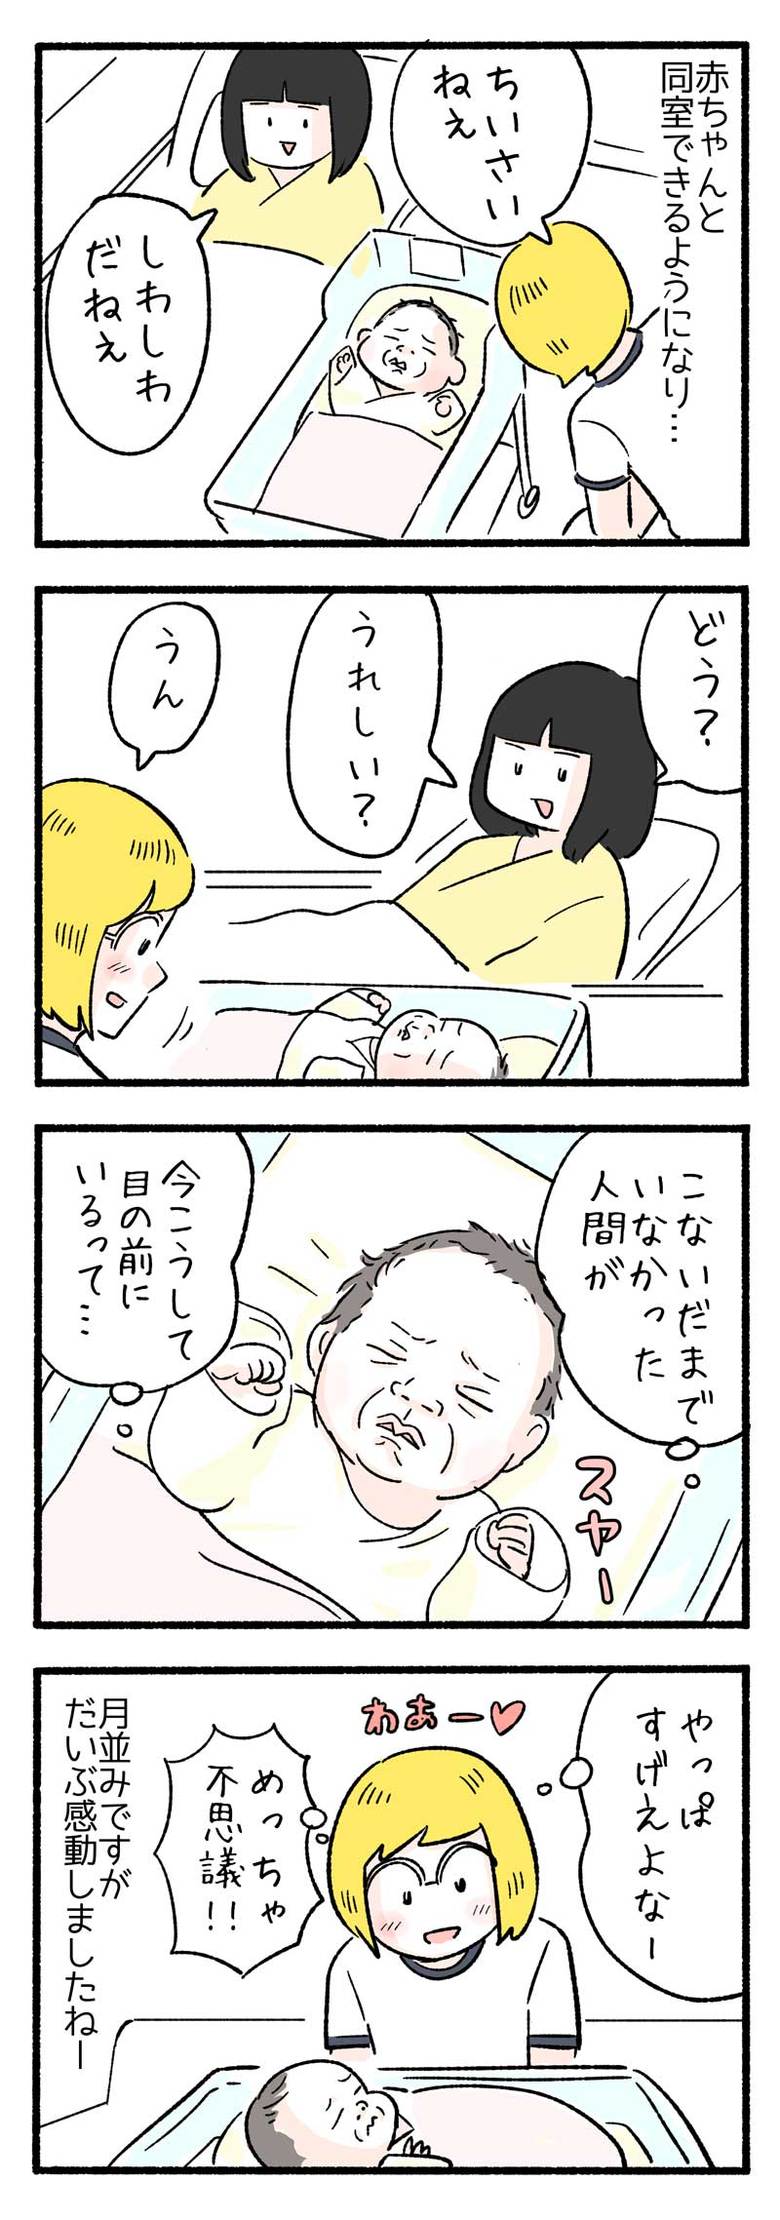 manga-nihipapa5_2sai